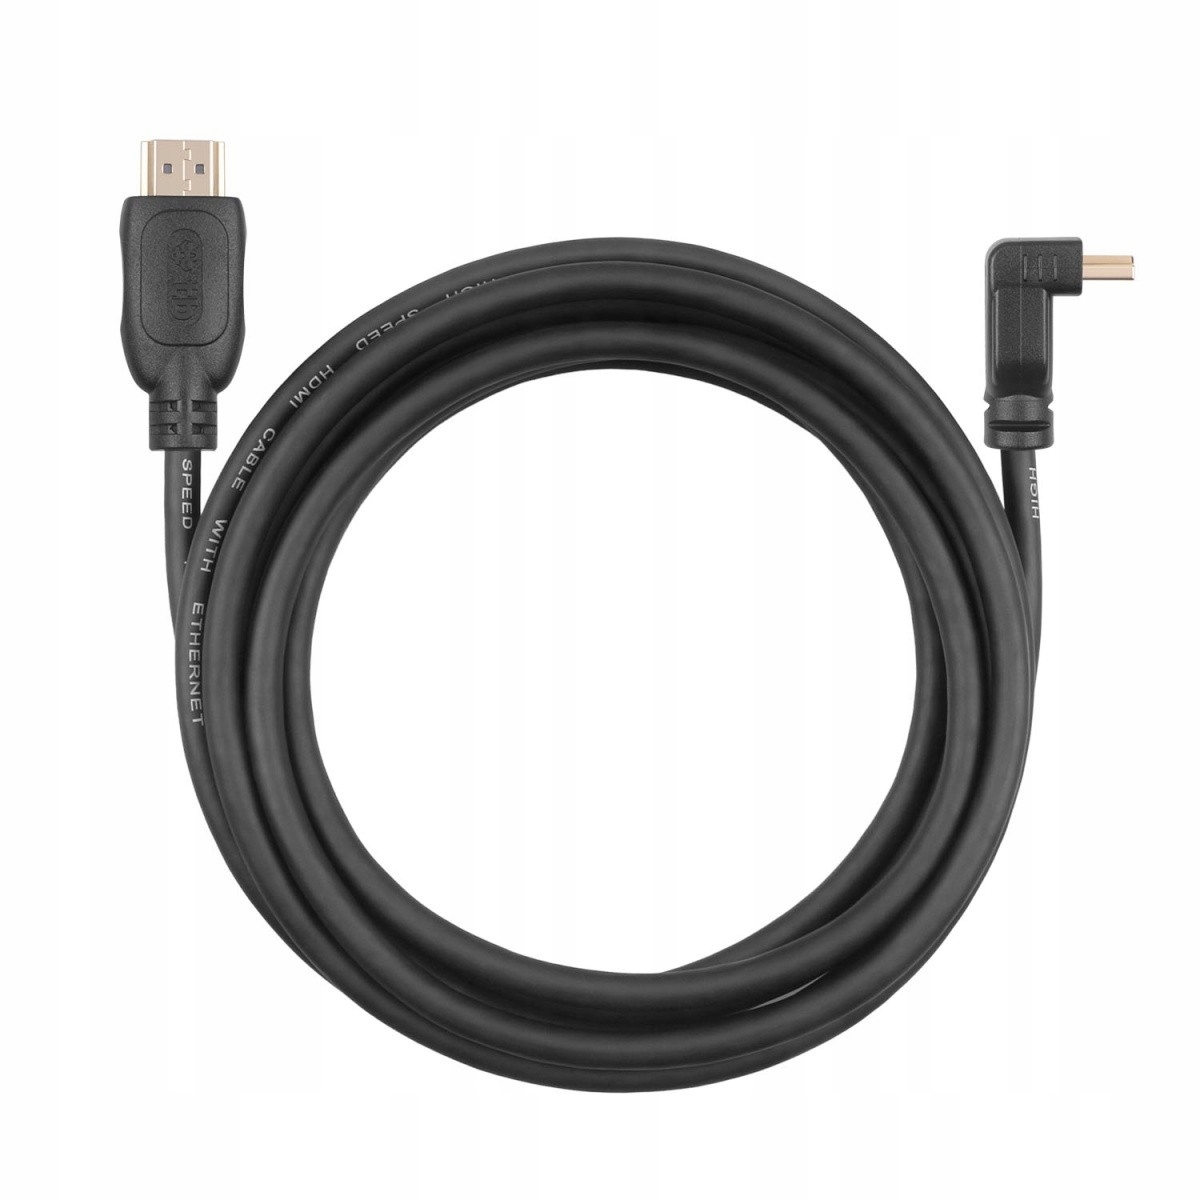 TB HDMI кабель V 2.0 позолоченный 1.8 м угловой модель AKTBXVH1K22018B